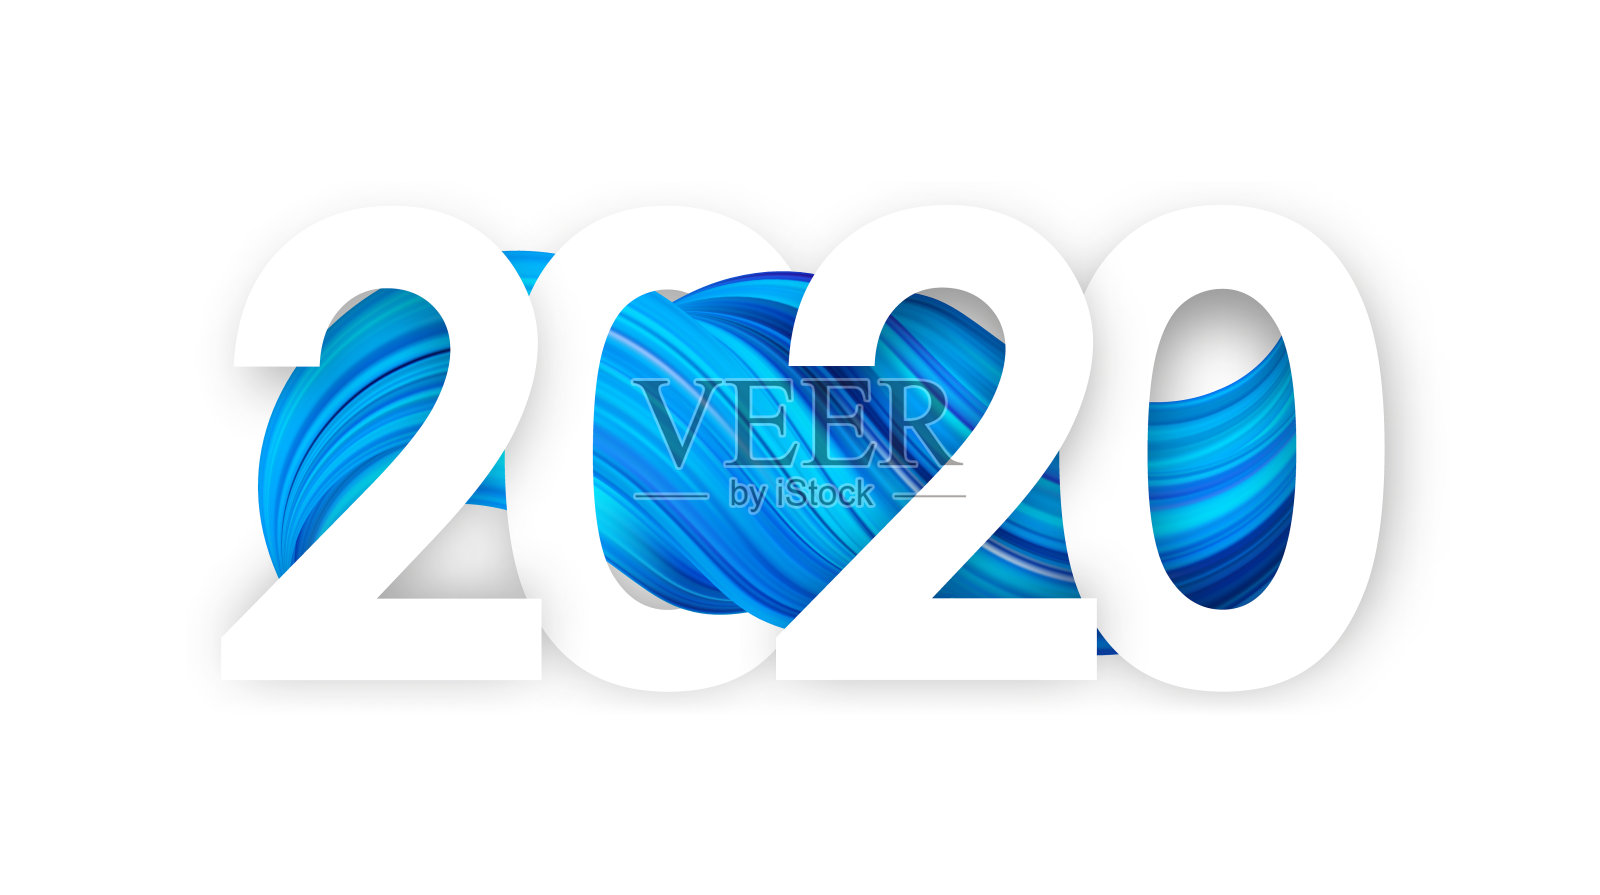 新年快乐。数字2020与蓝色抽象扭曲油漆笔触形状。时尚的设计插画图片素材